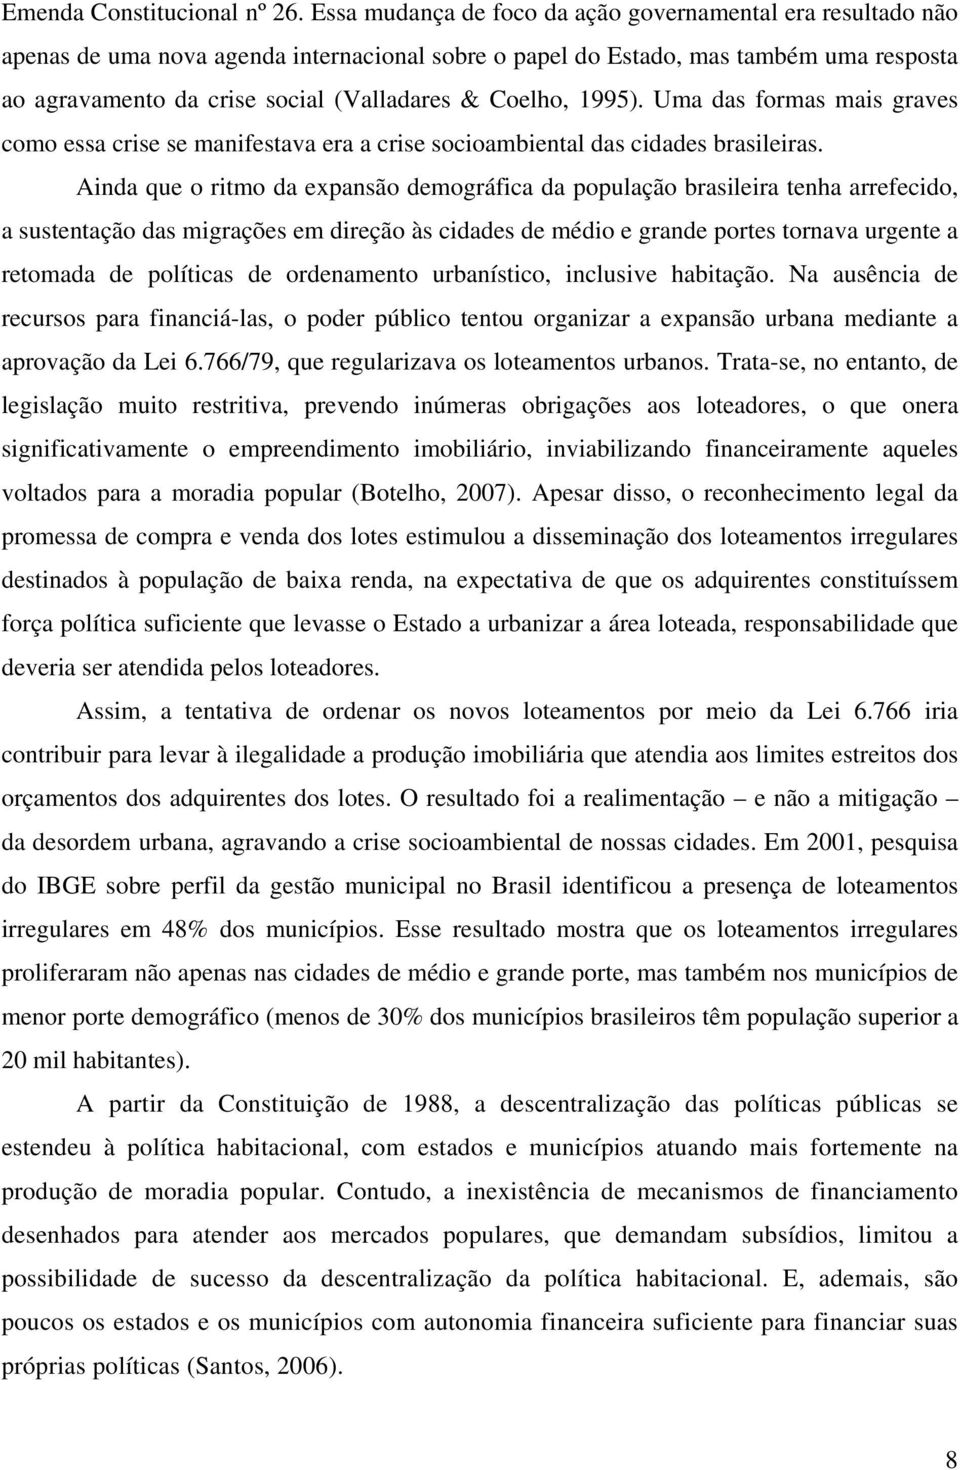 Coelho, 1995). Uma das formas mais graves como essa crise se manifestava era a crise socioambiental das cidades brasileiras.